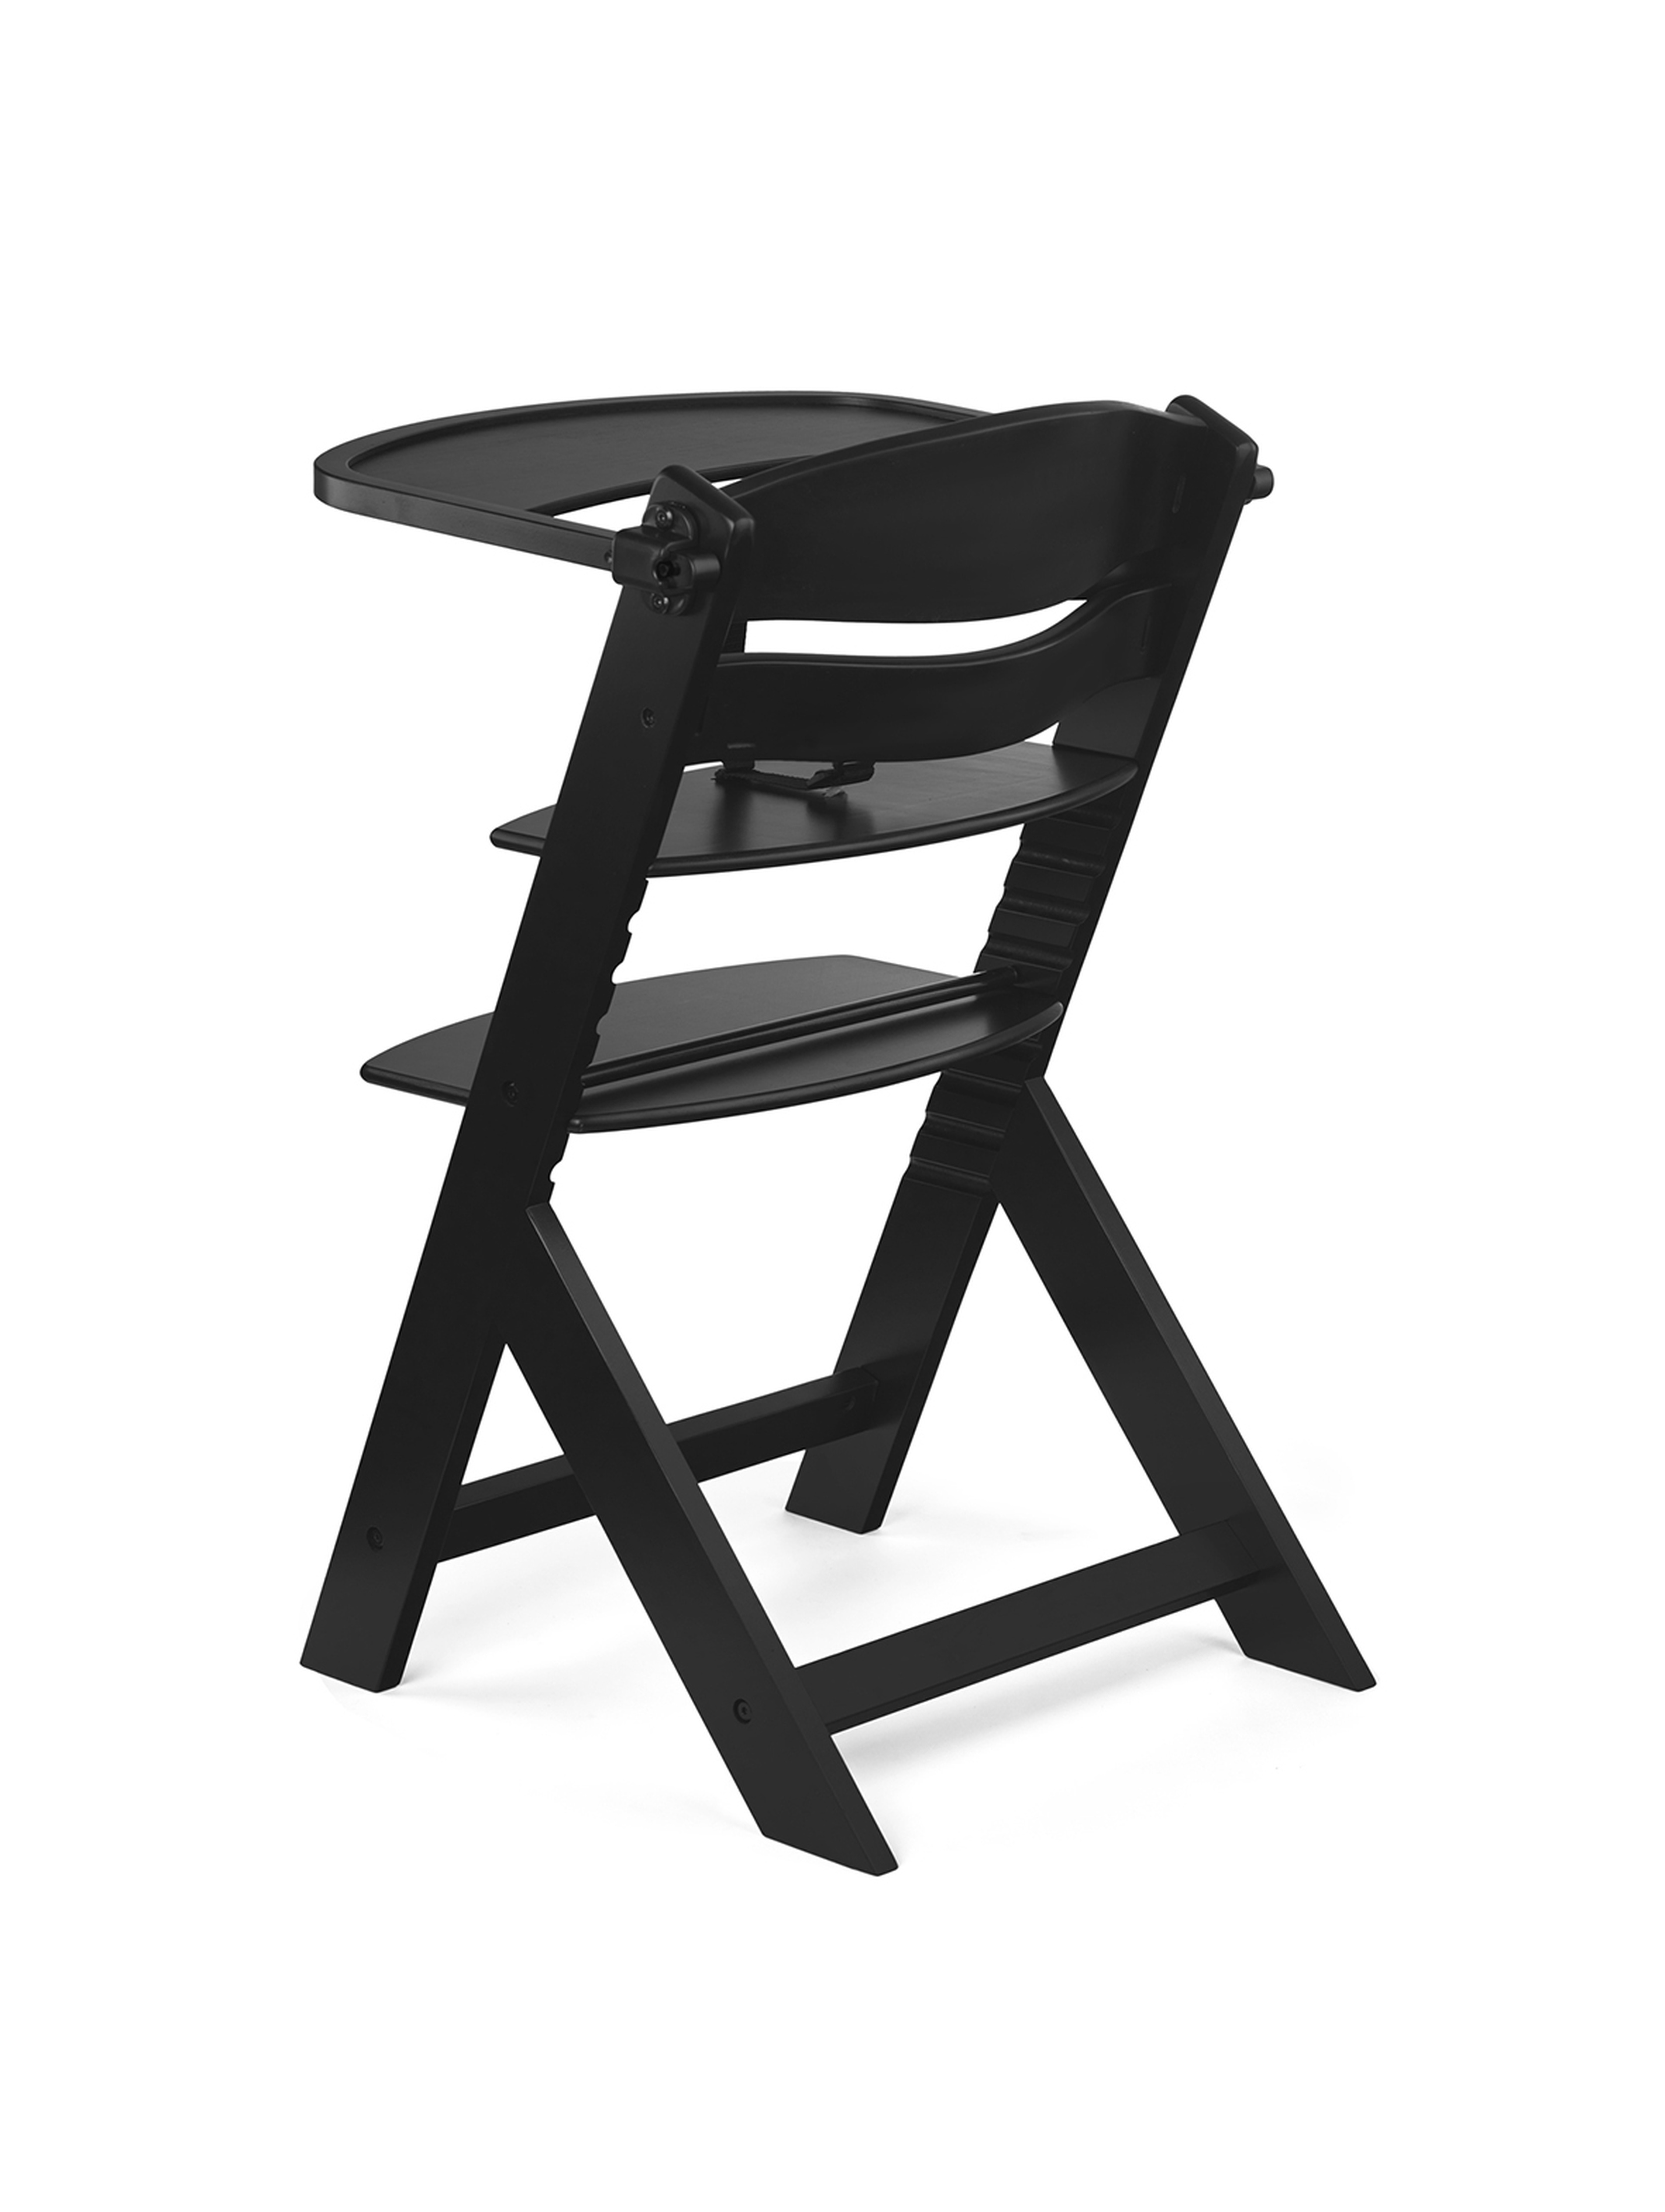 Krzesełko do karmienia 3w1 ENOCK Kinderkraft  - black